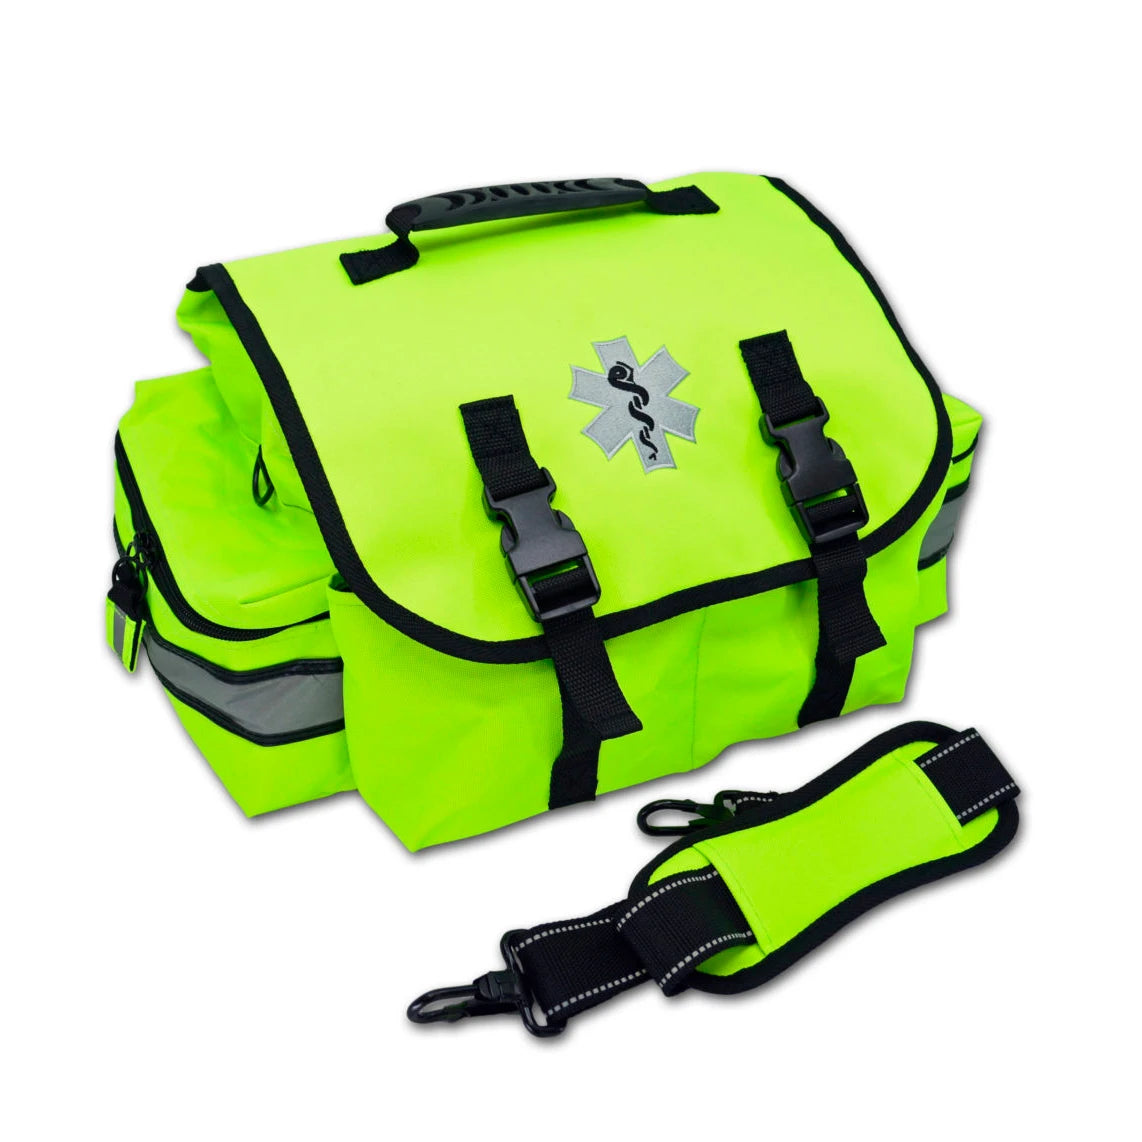 Small EMT Trauma Bag w/ Fill Kit SKA